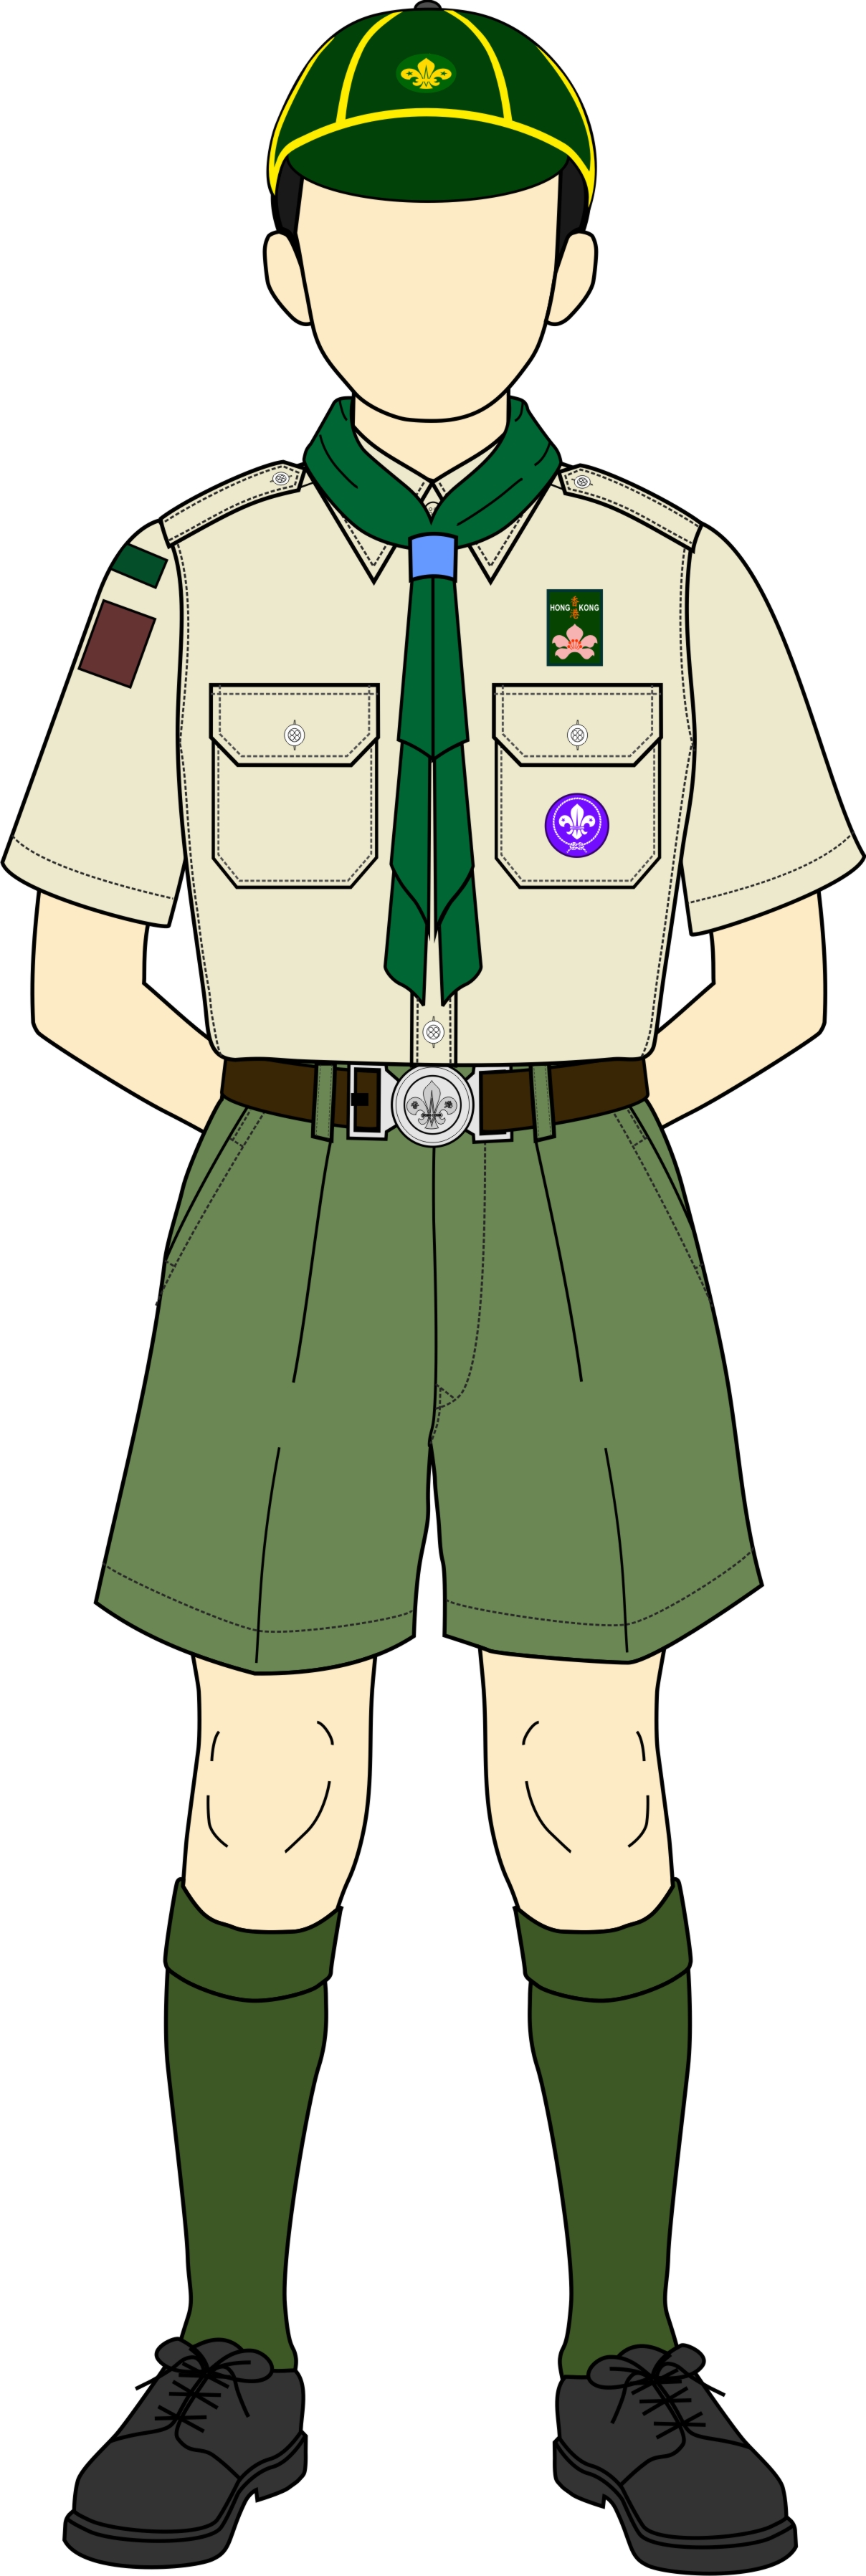 Cub Scouts Male Uniform